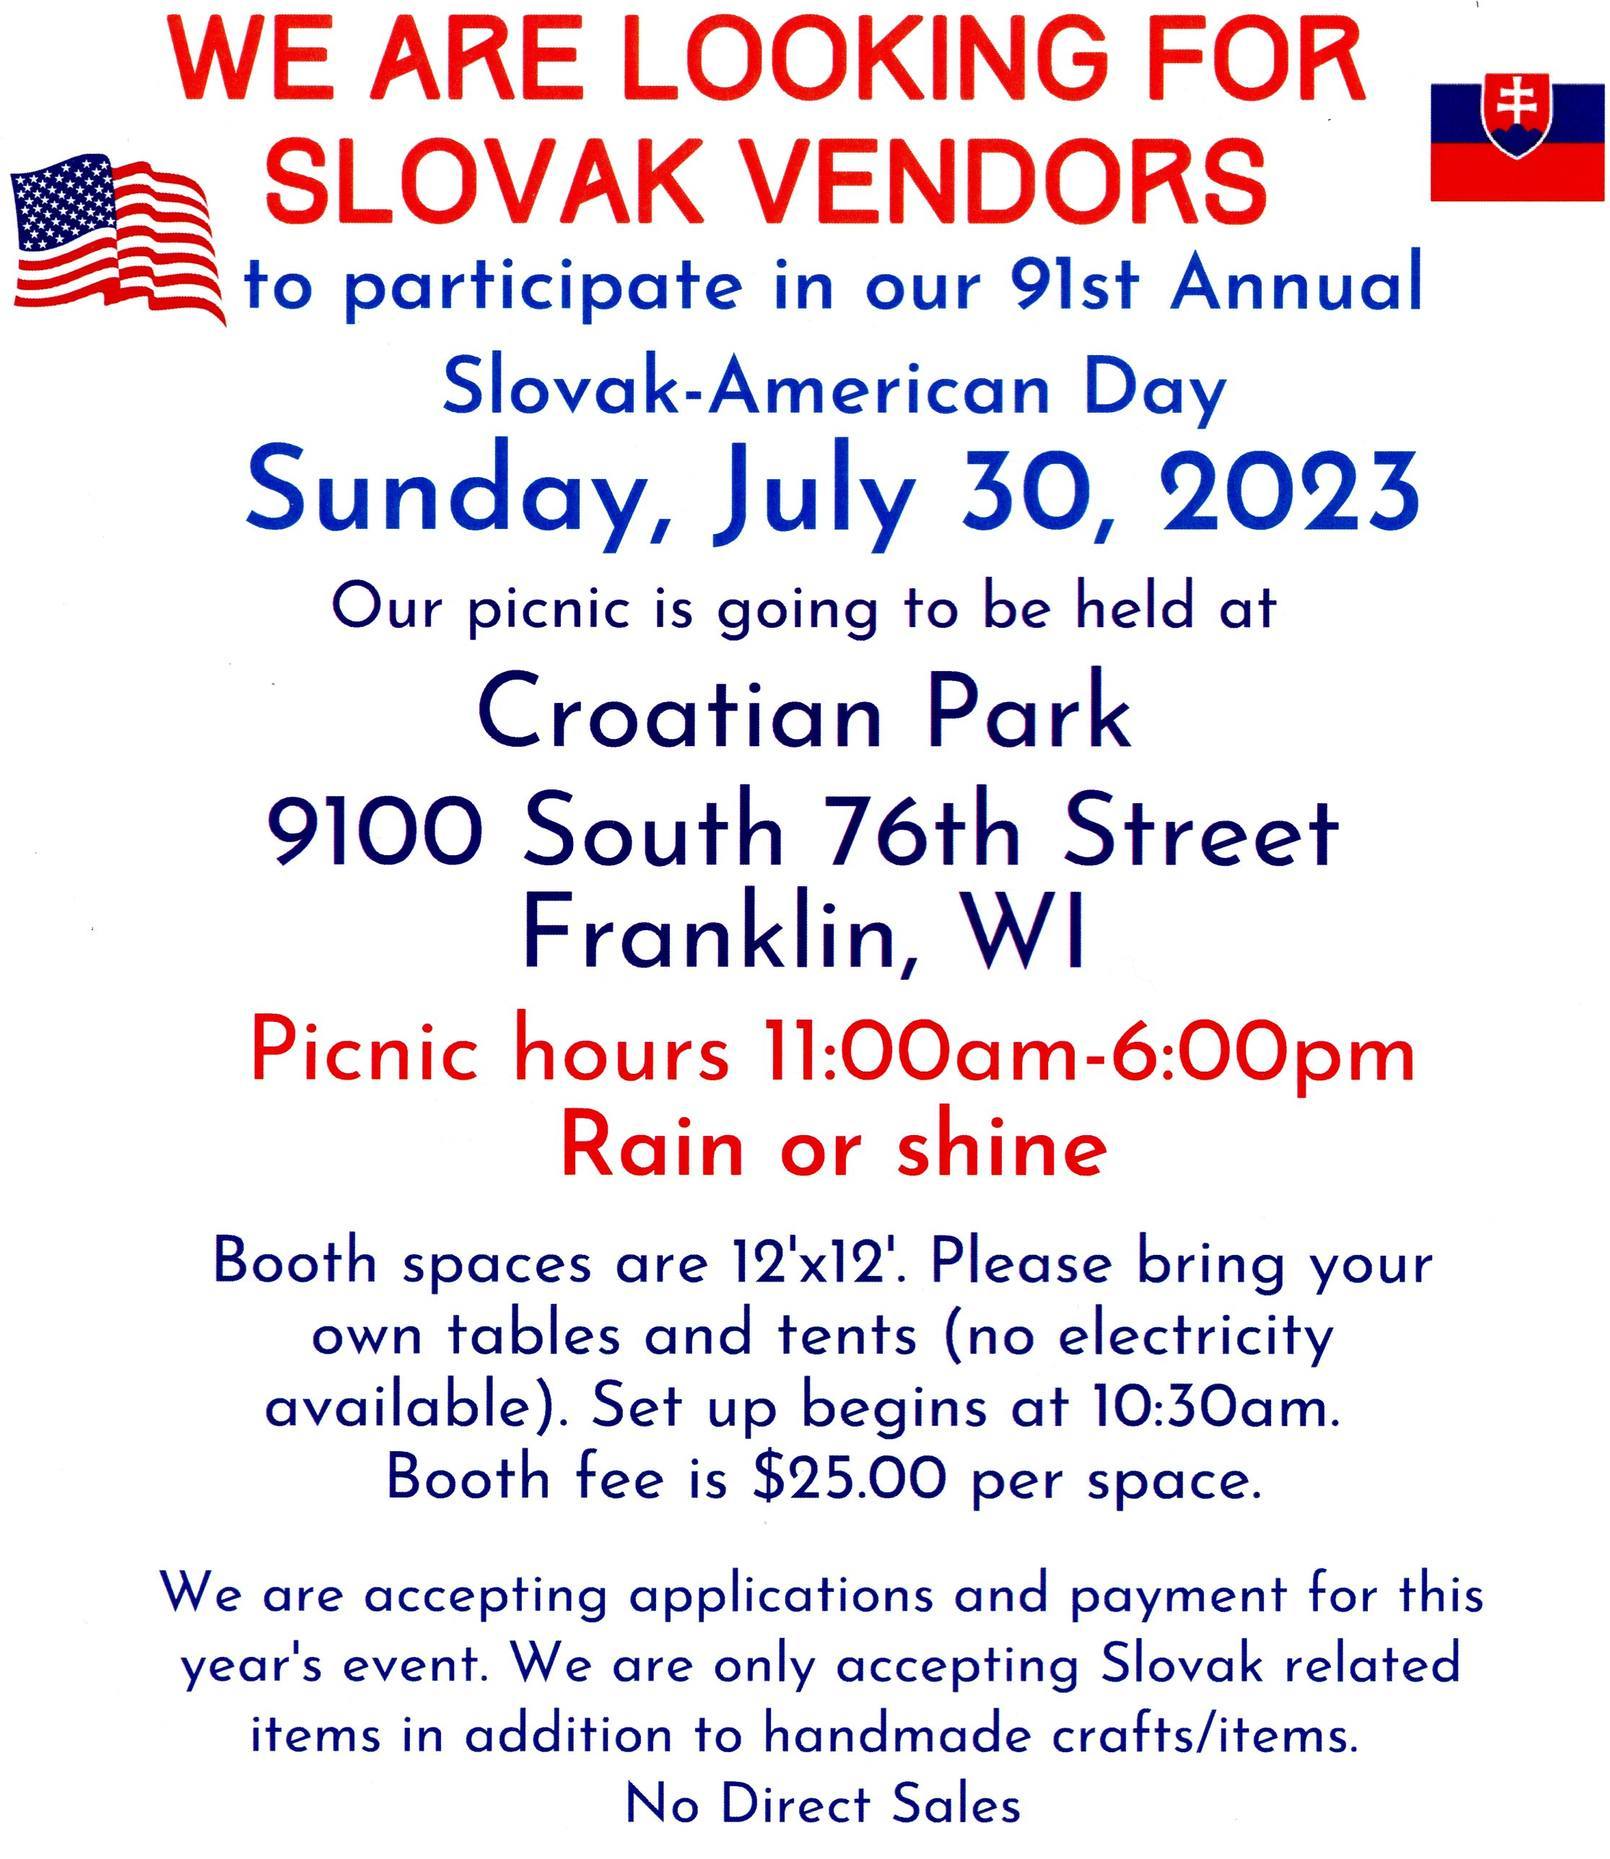 91st Annual Slovak-American Day Picnic / 91. slovensko-americk De piknik 2023 Franklin